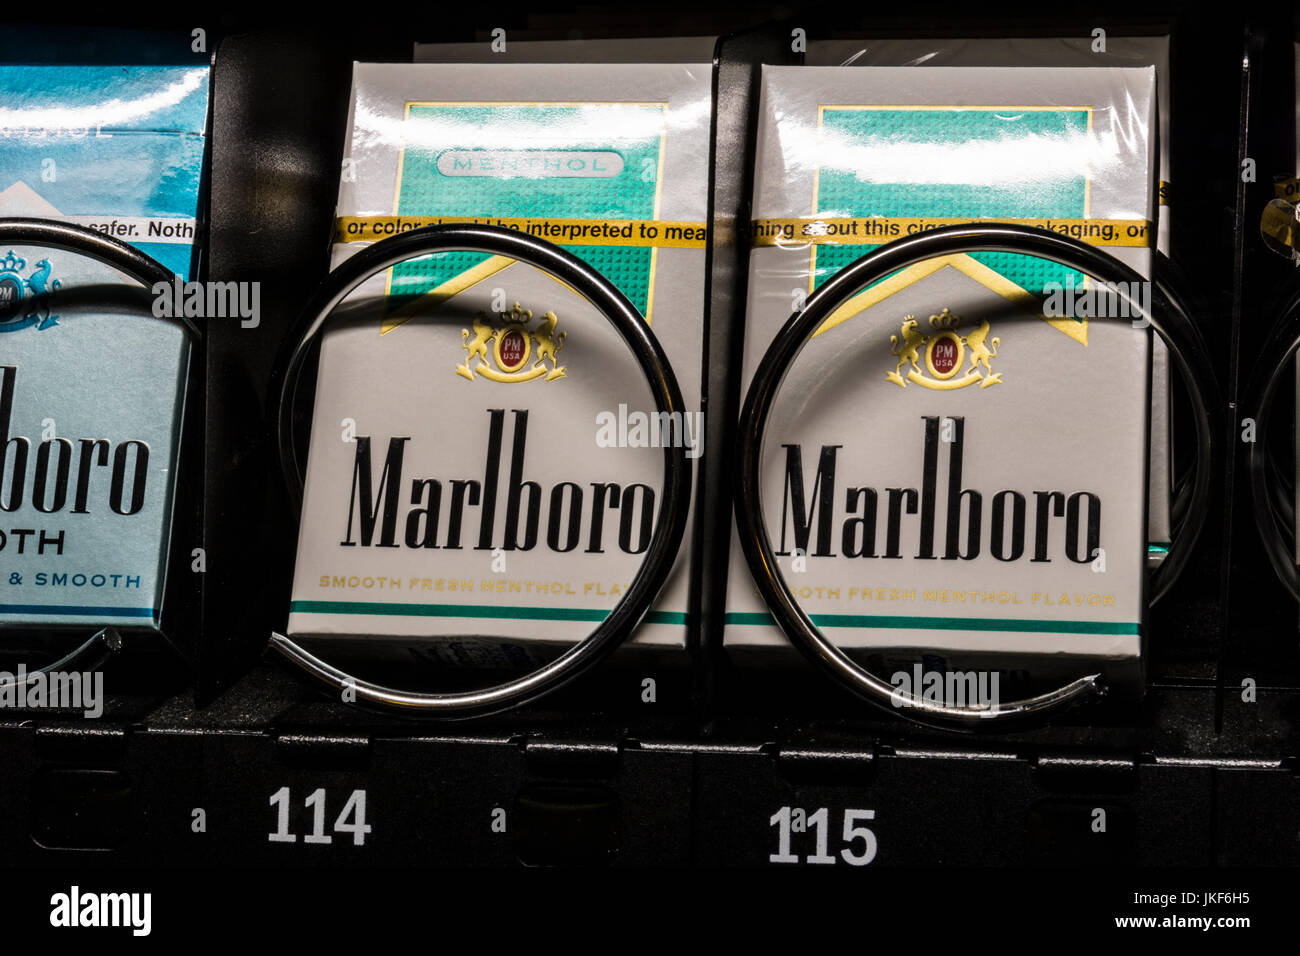 Las Vegas - Circa Juillet 2017 : paquets de cigarettes Marlboro dans un distributeur automatique. Marlboro est un produit de l'Altria Group III Banque D'Images